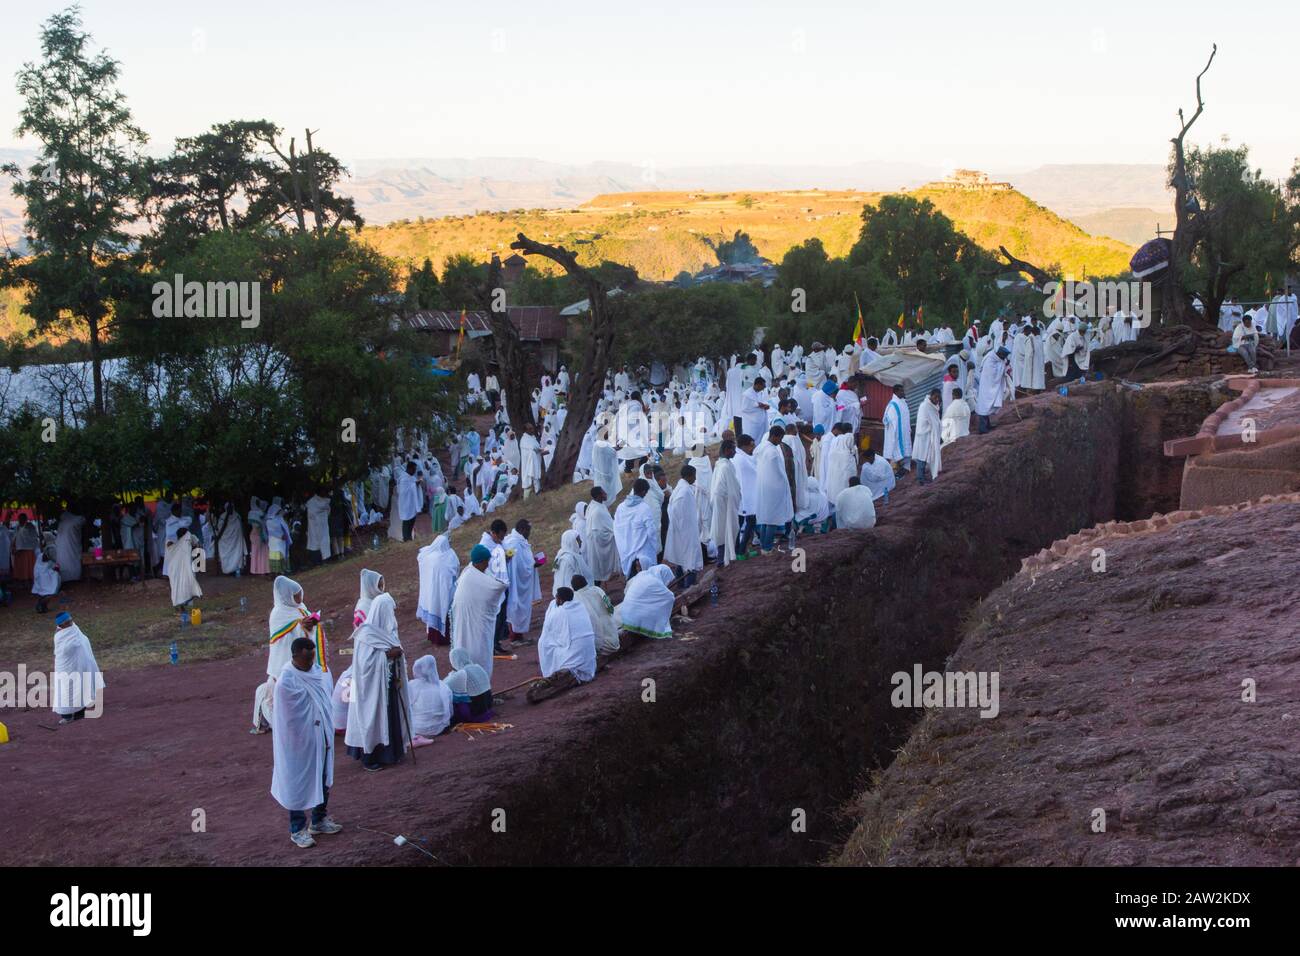 Lalibela, Äthiopien - November 2018: Pilger, die in traditionellen äthiopischen weißen Farben gekleidet sind, versammeln sich außerhalb der unterirdischen Kirchen von Lalibela. Stockfoto